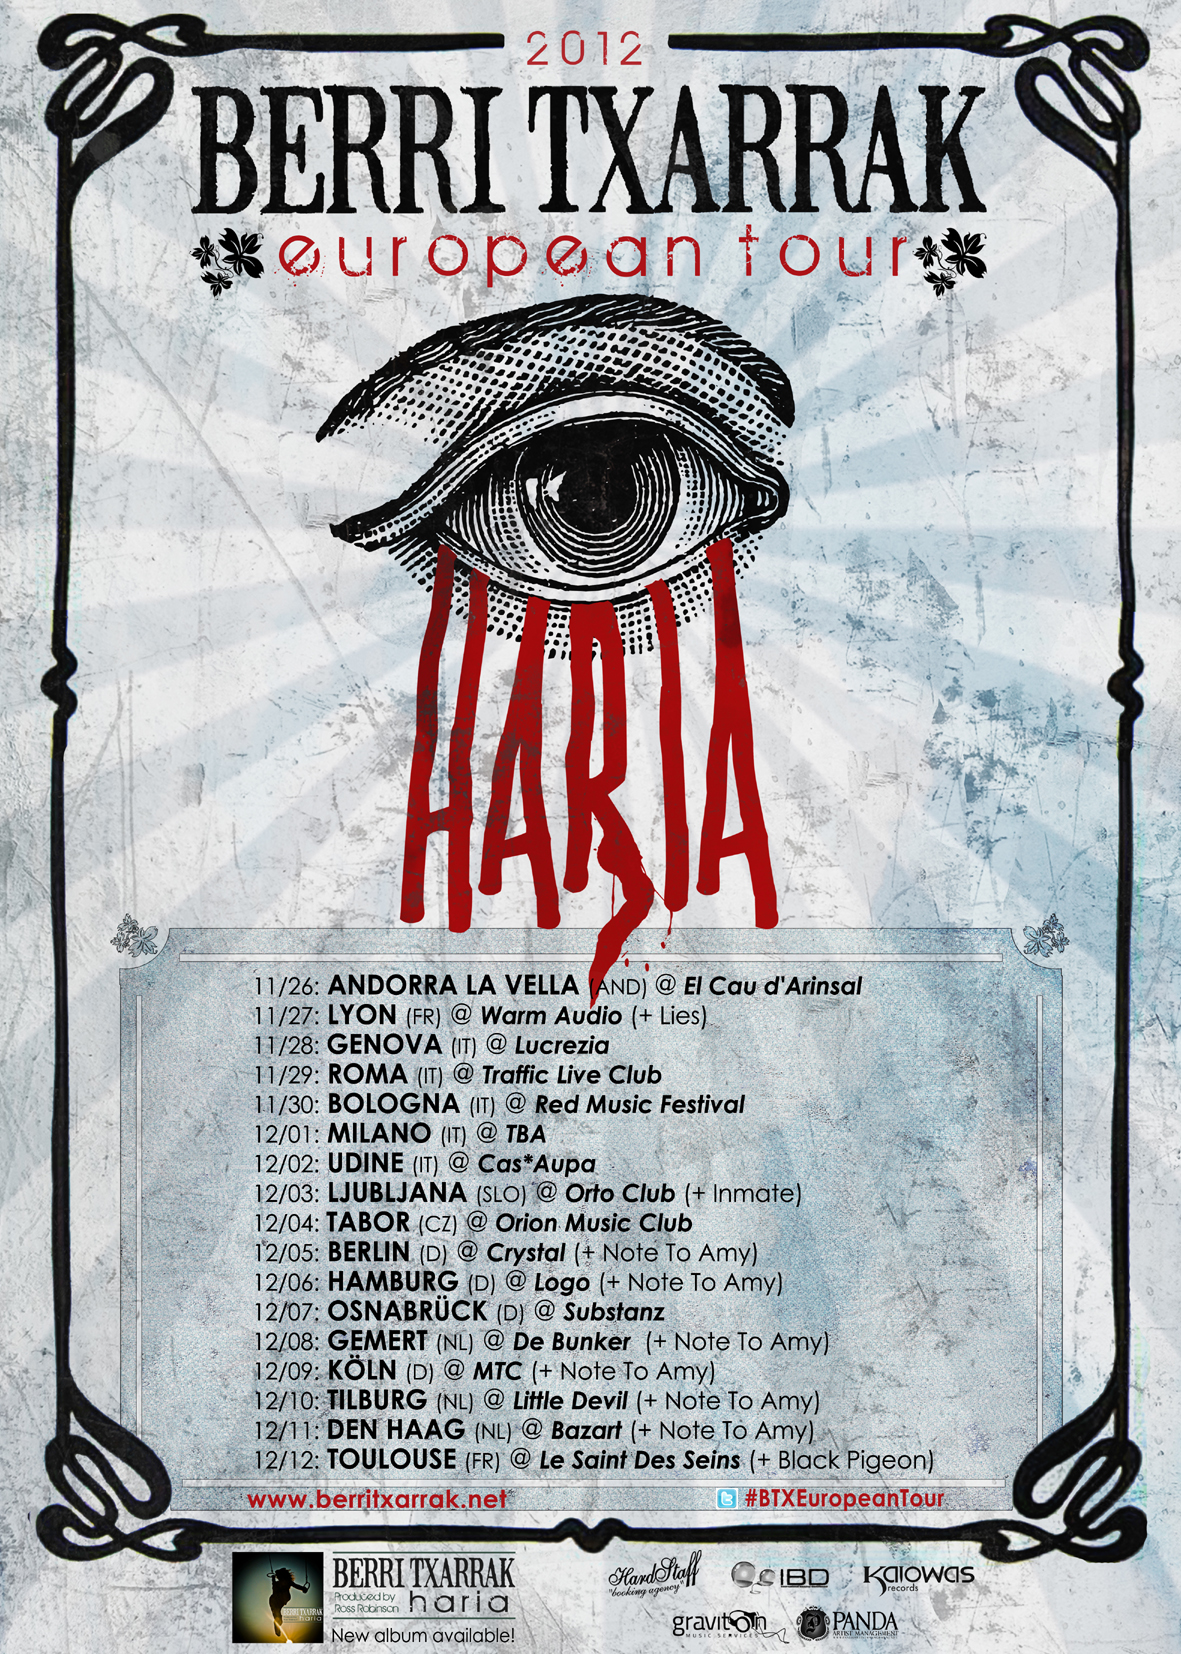 BERRI TXARRAK EUROPEAN TOUR 2012 ANNOUNCED!